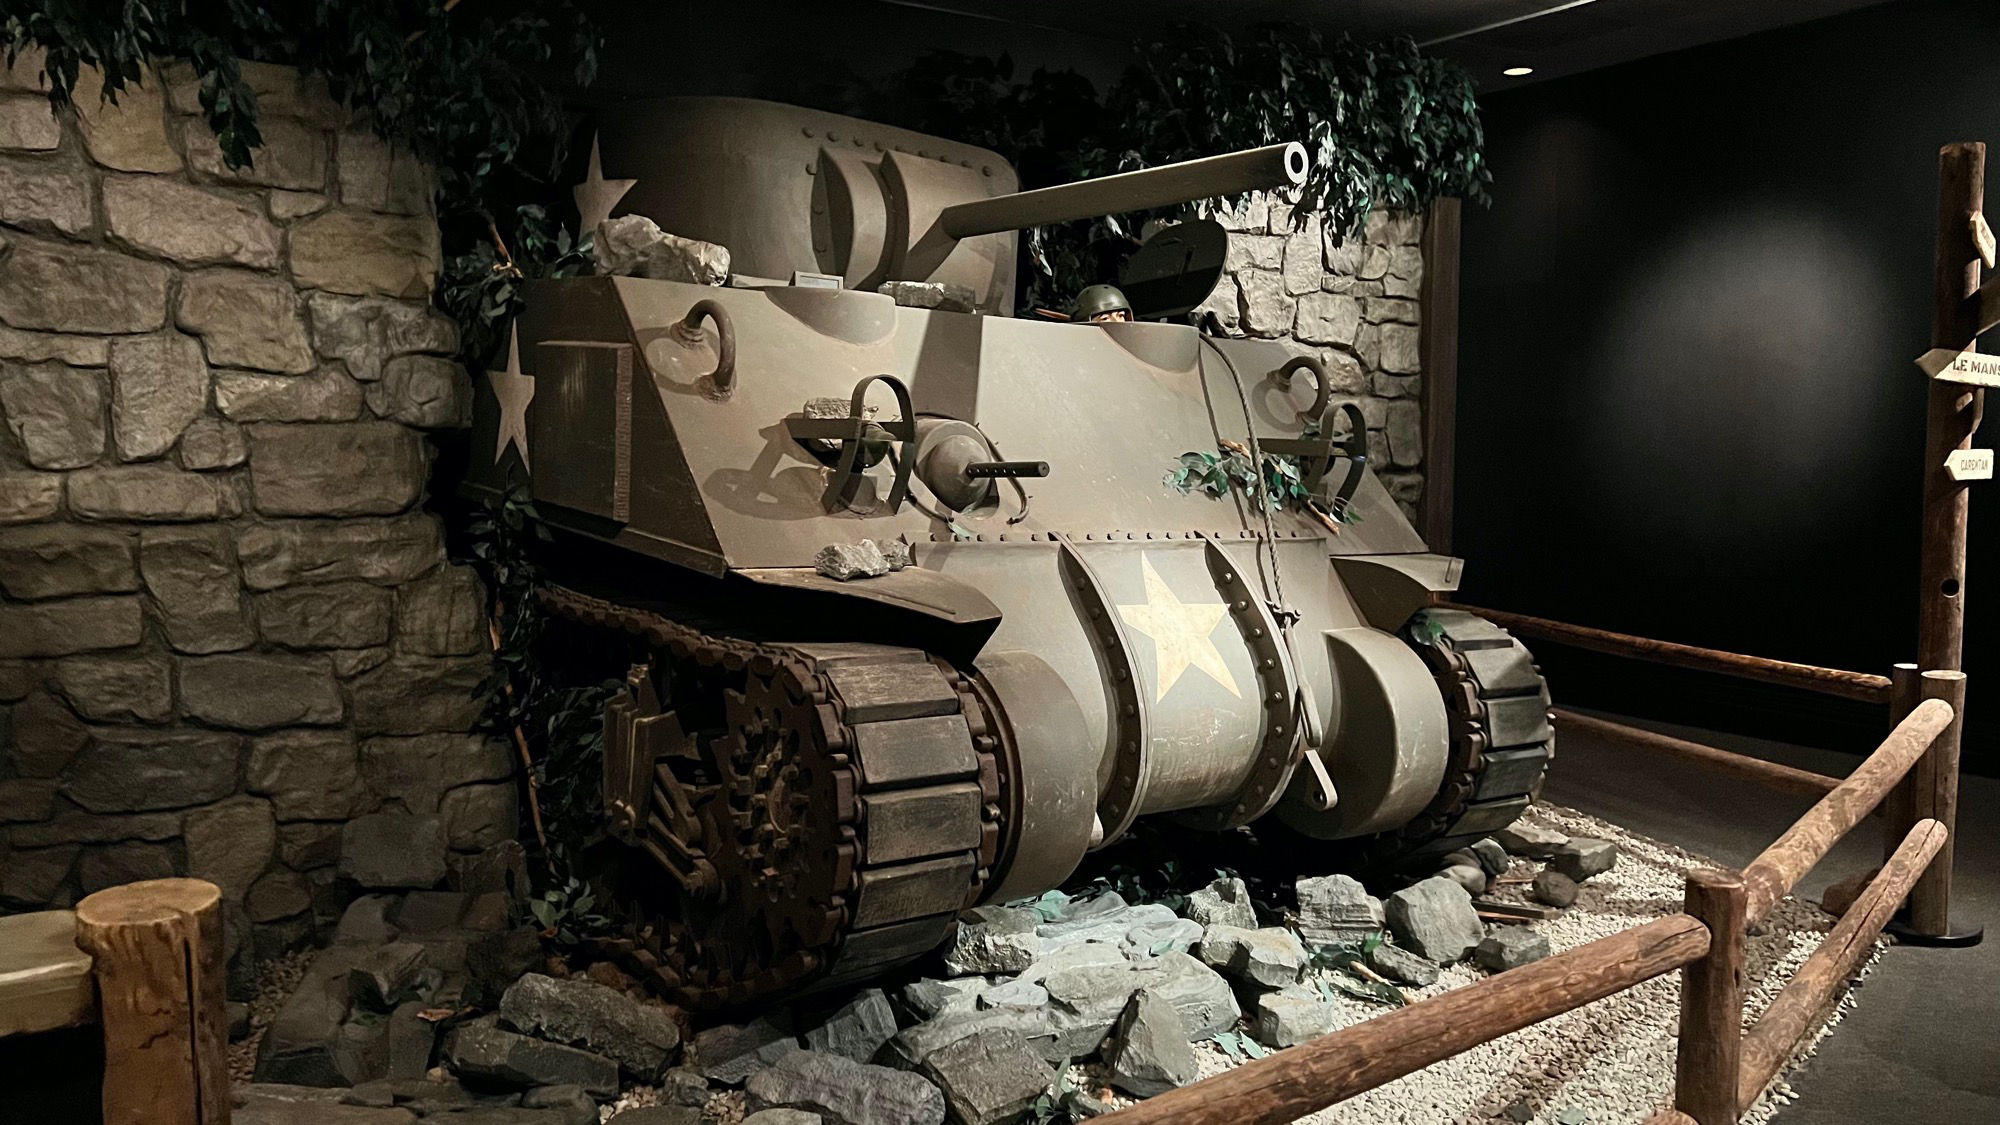 WWII Exhibit Tank Prop